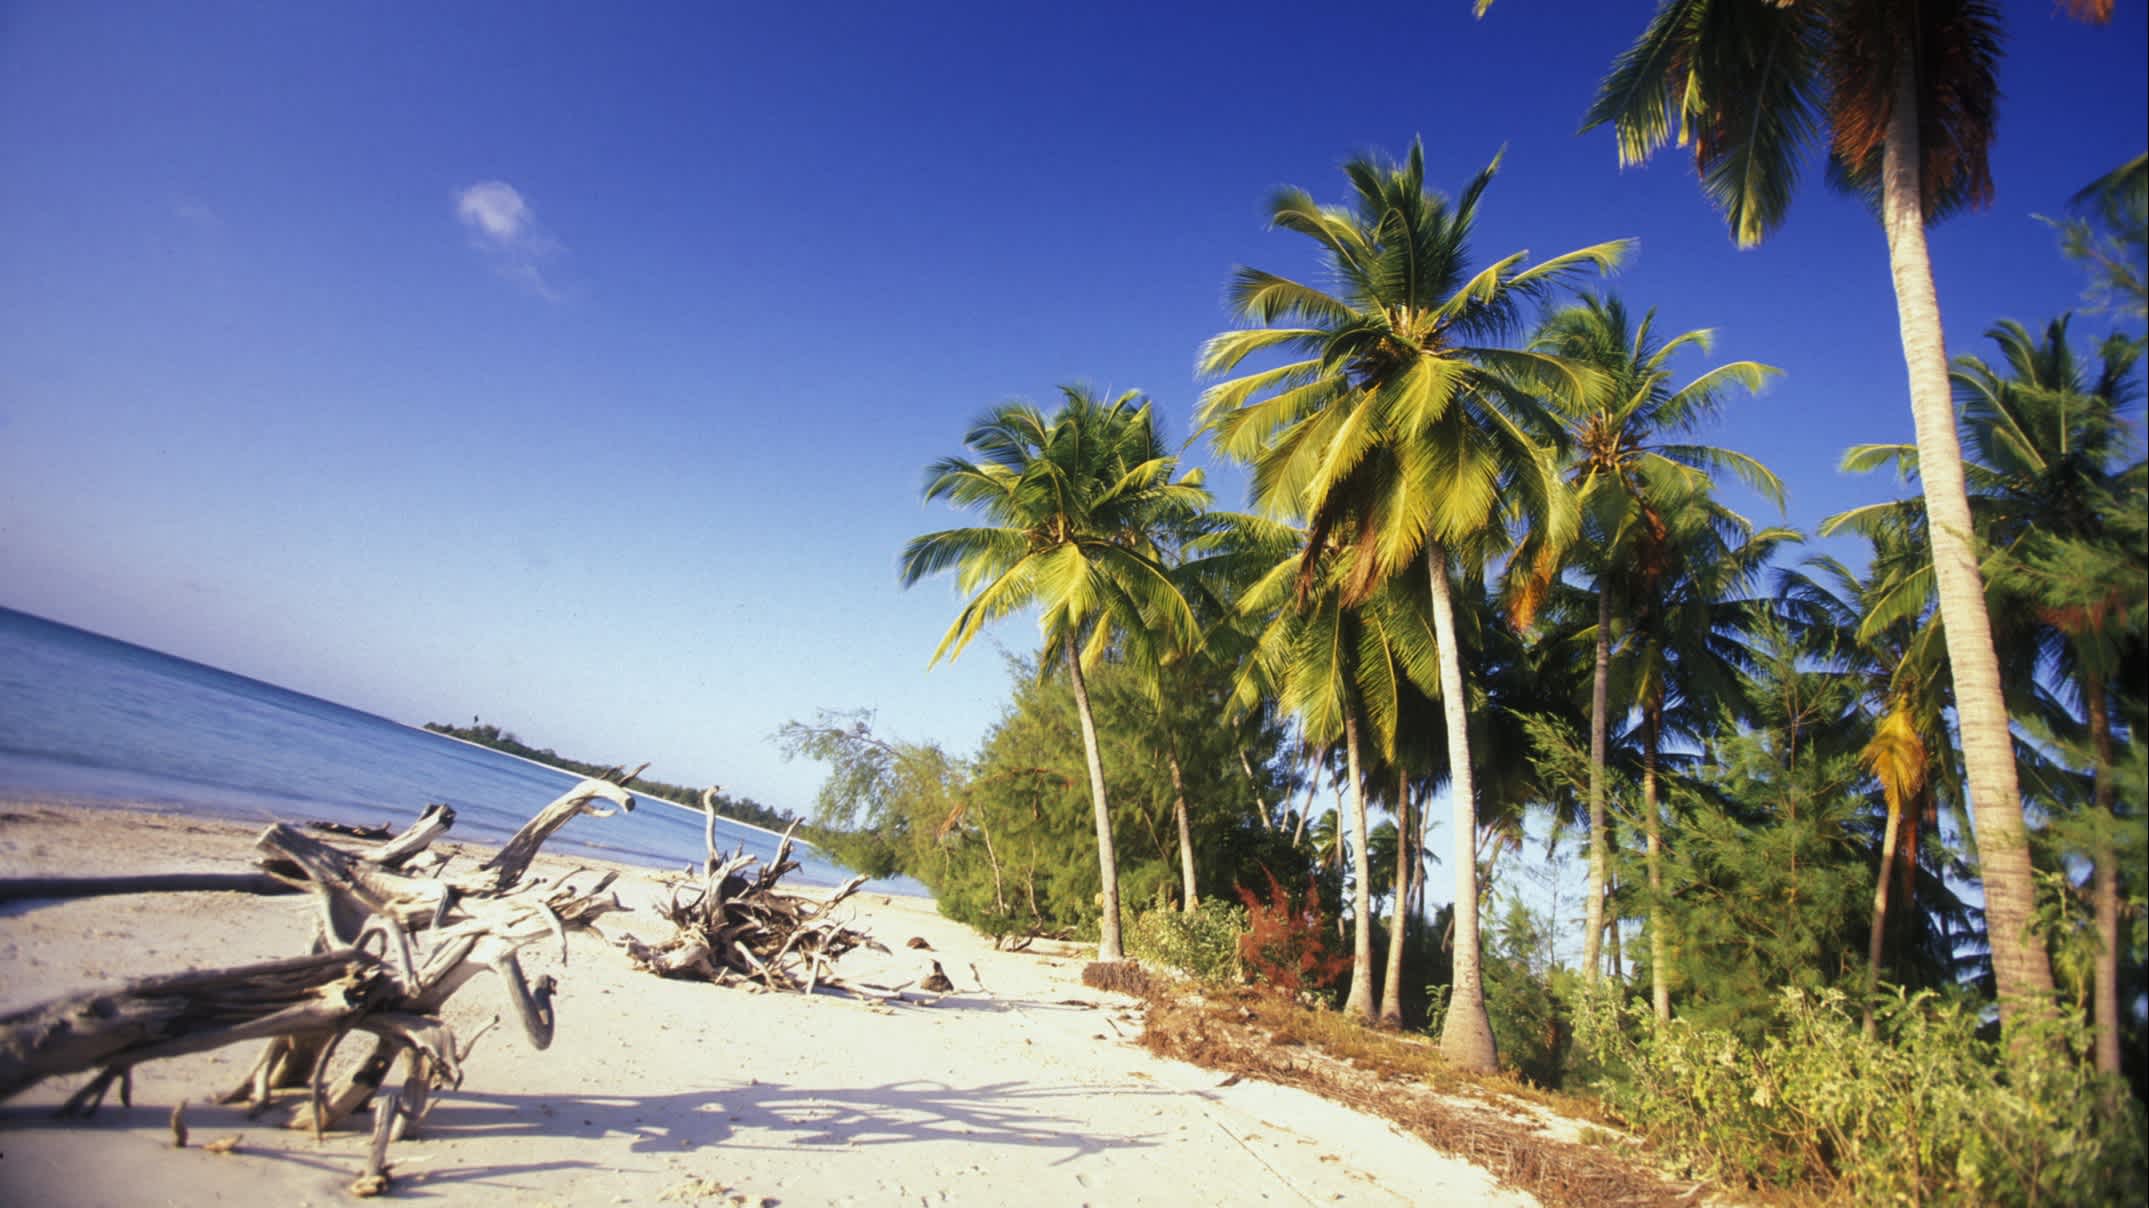 Der Traumstrand von Michamvi an der Chwaka Bay der Ostküste auf der Insel Sansibar, die zu Tansania gehört mit Palmen, angeschwemmten Holzstücken und Palmen. 

